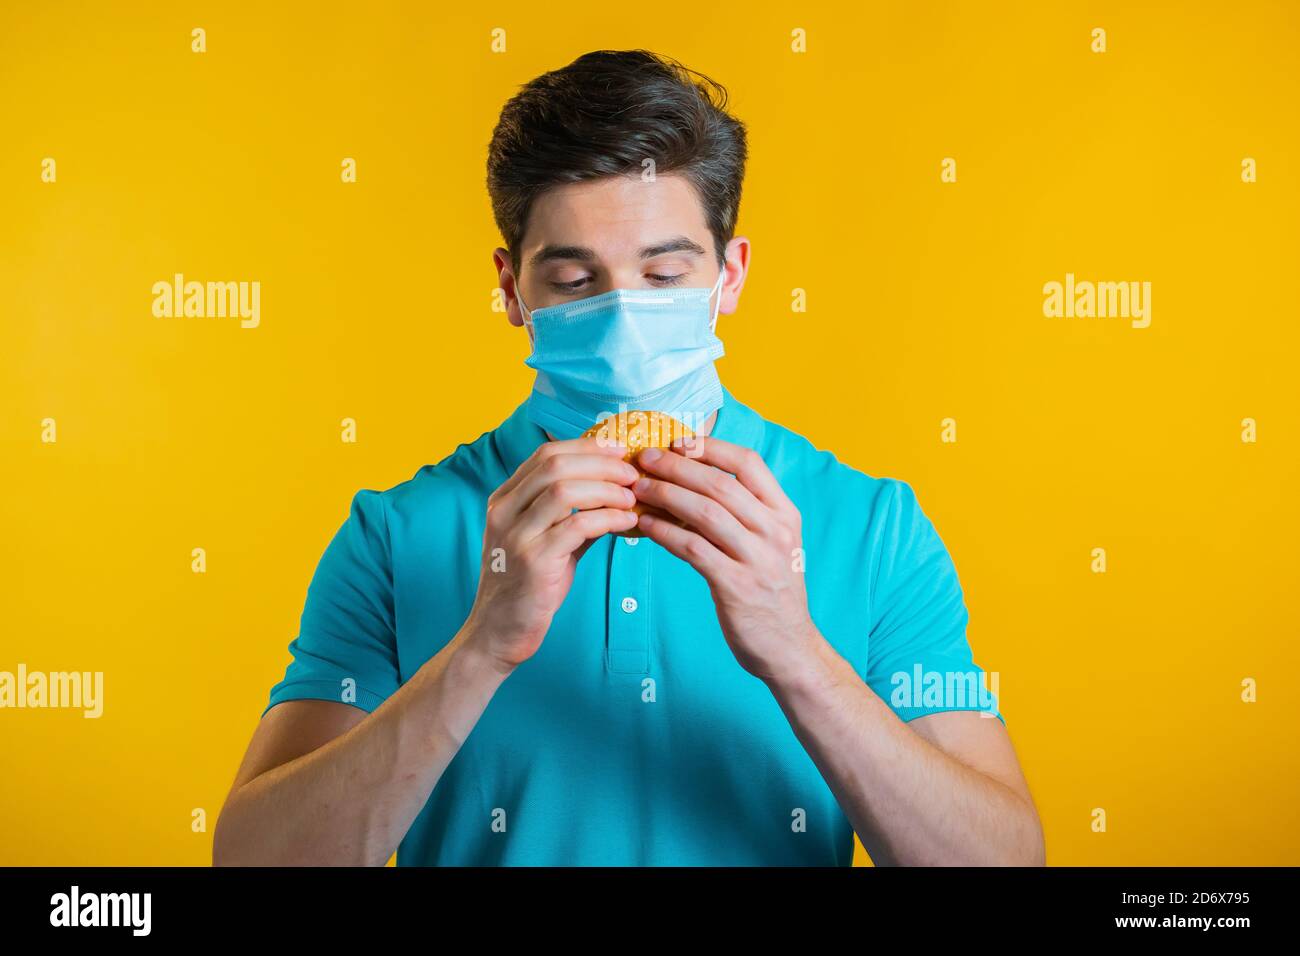 Junger Mann in schützende medizinische Maske essen Burger auf gelben Studio-Hintergrund. Guy macht Spaß, zeigt, wie man während einer Epidemie lebt. Stockfoto